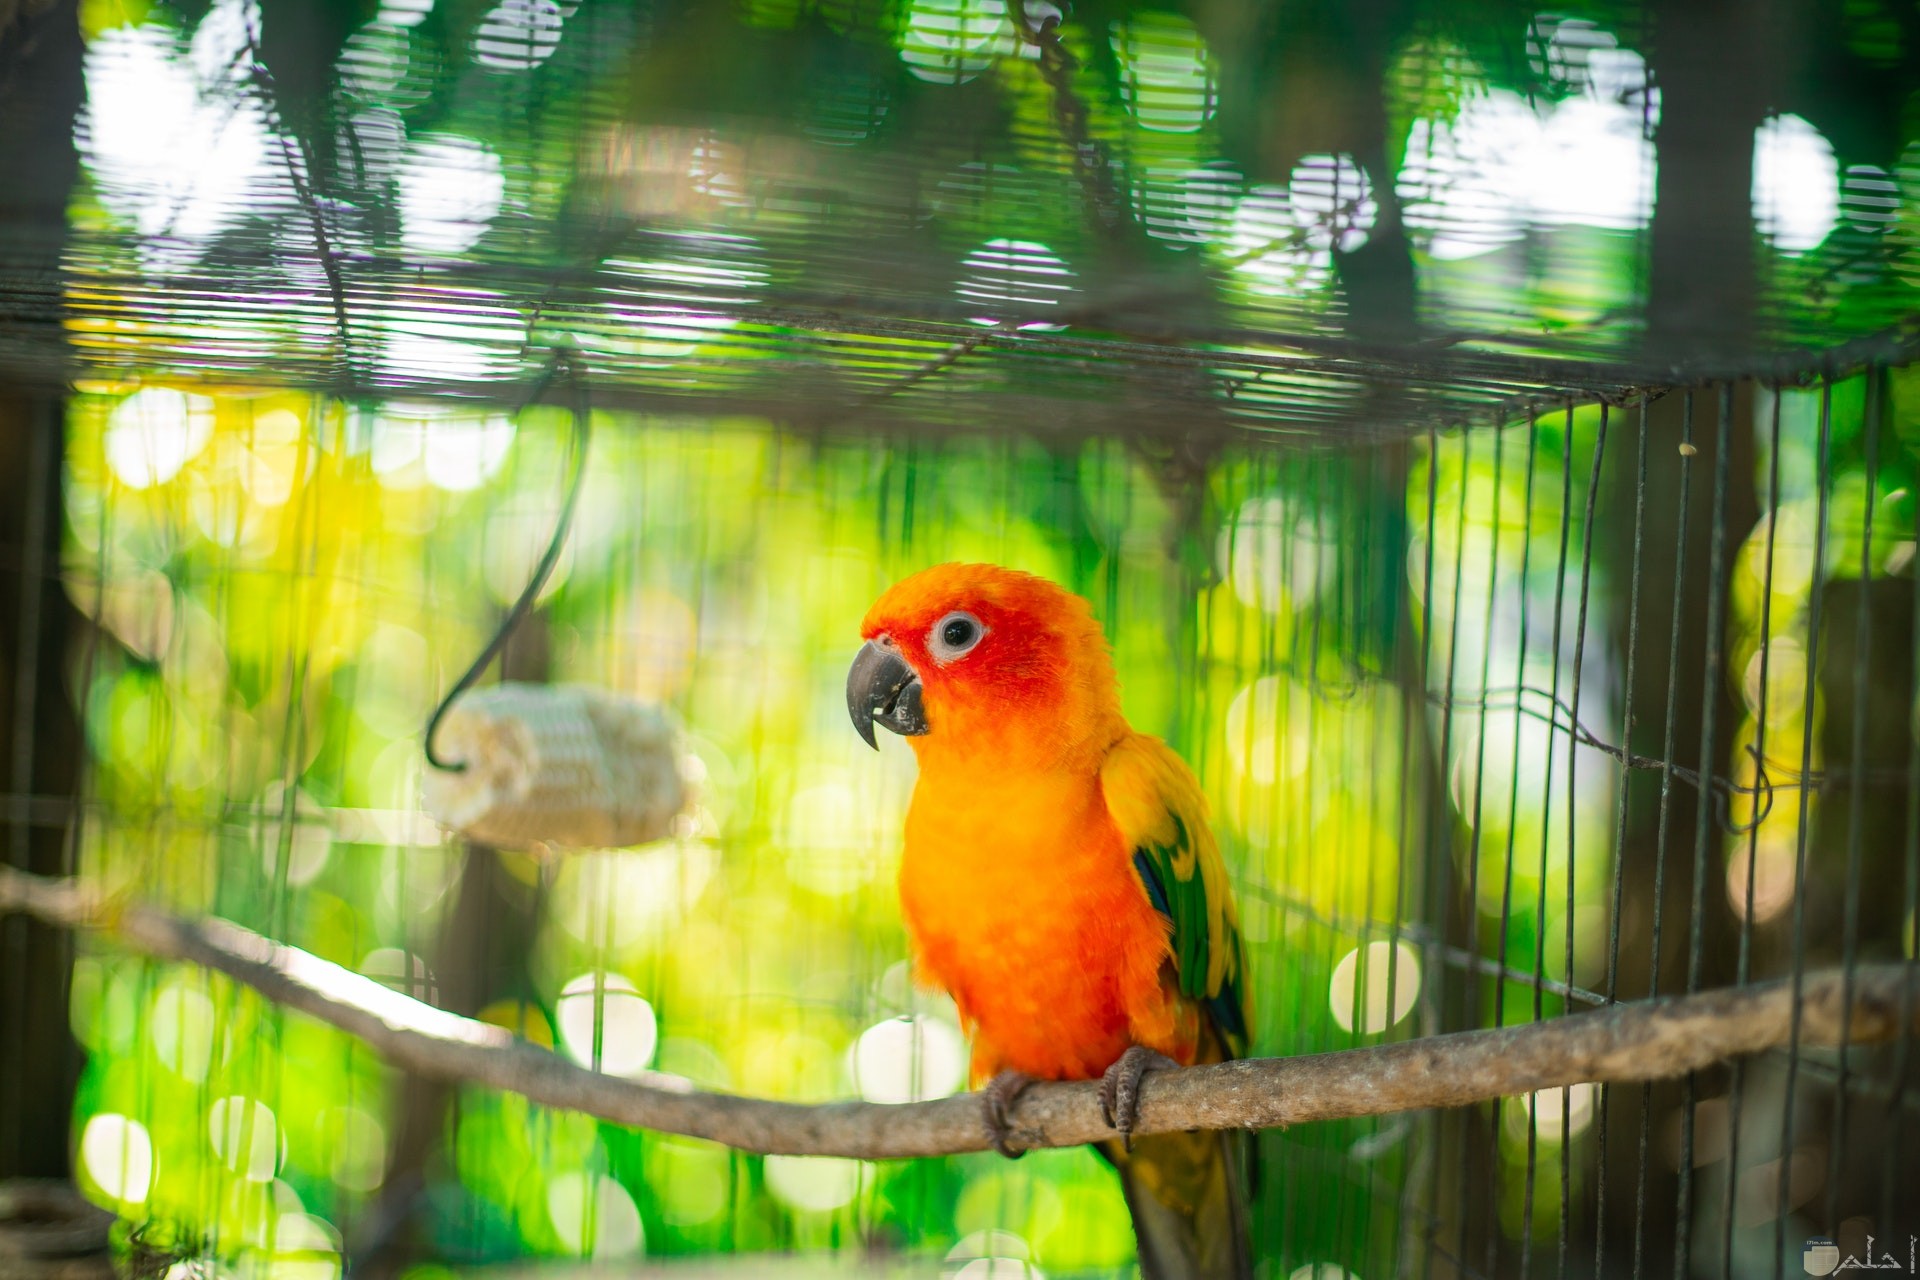 صورة جميلة لطائر ملون باللون الأصفر والبرتقالي والأخضر موجود داخل قفص